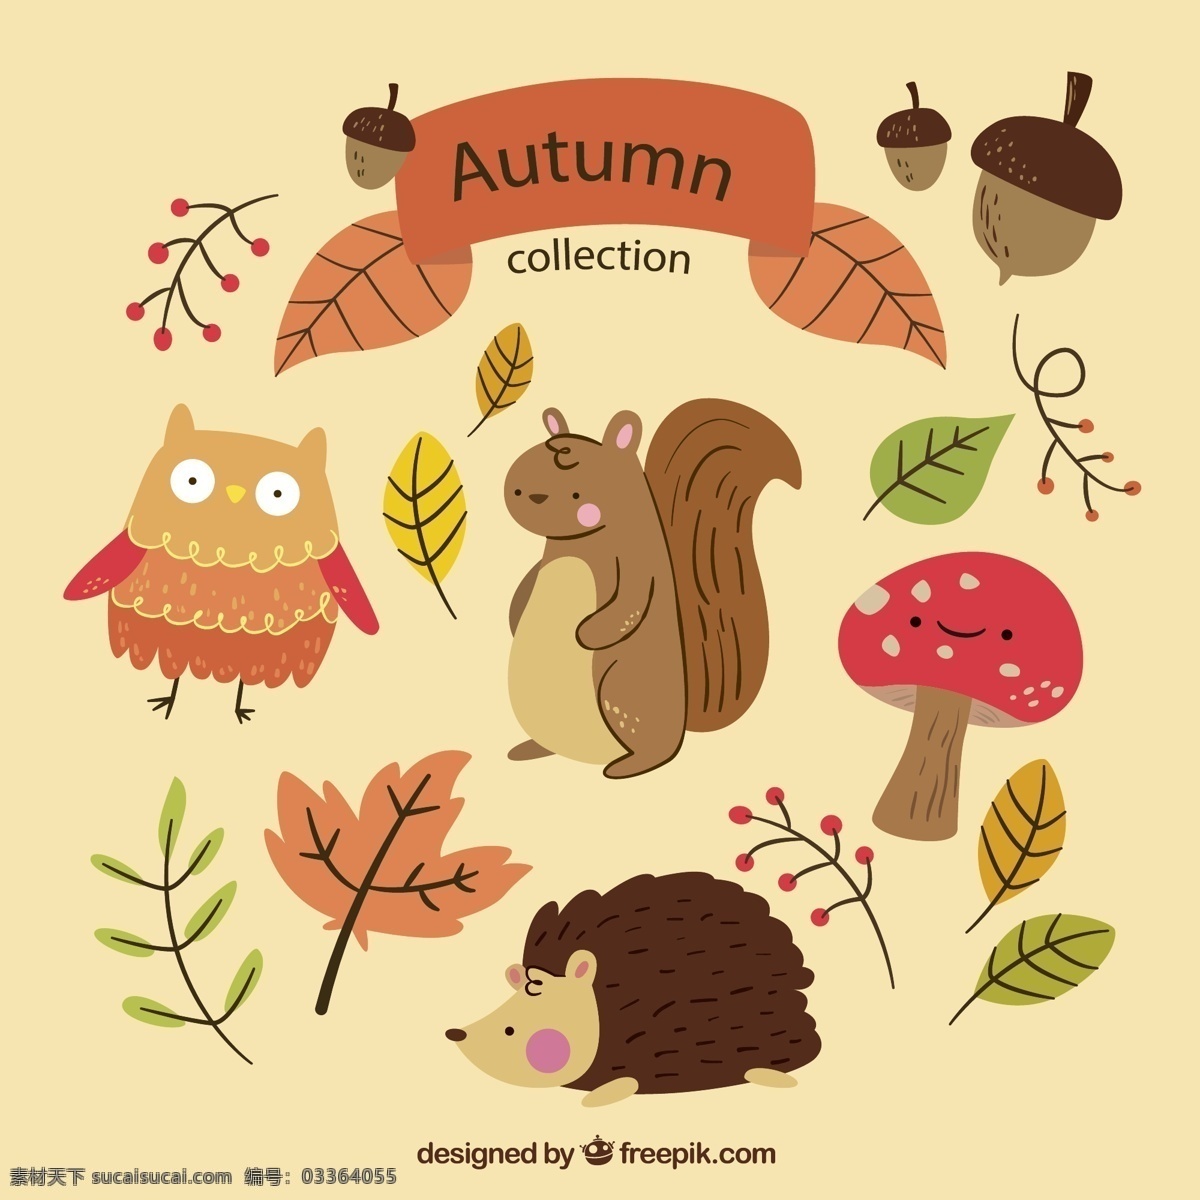 秋季 叶子 动物图片 橡子 松鼠 刺猬 猫头鹰 蘑菇 矢量 高清图片